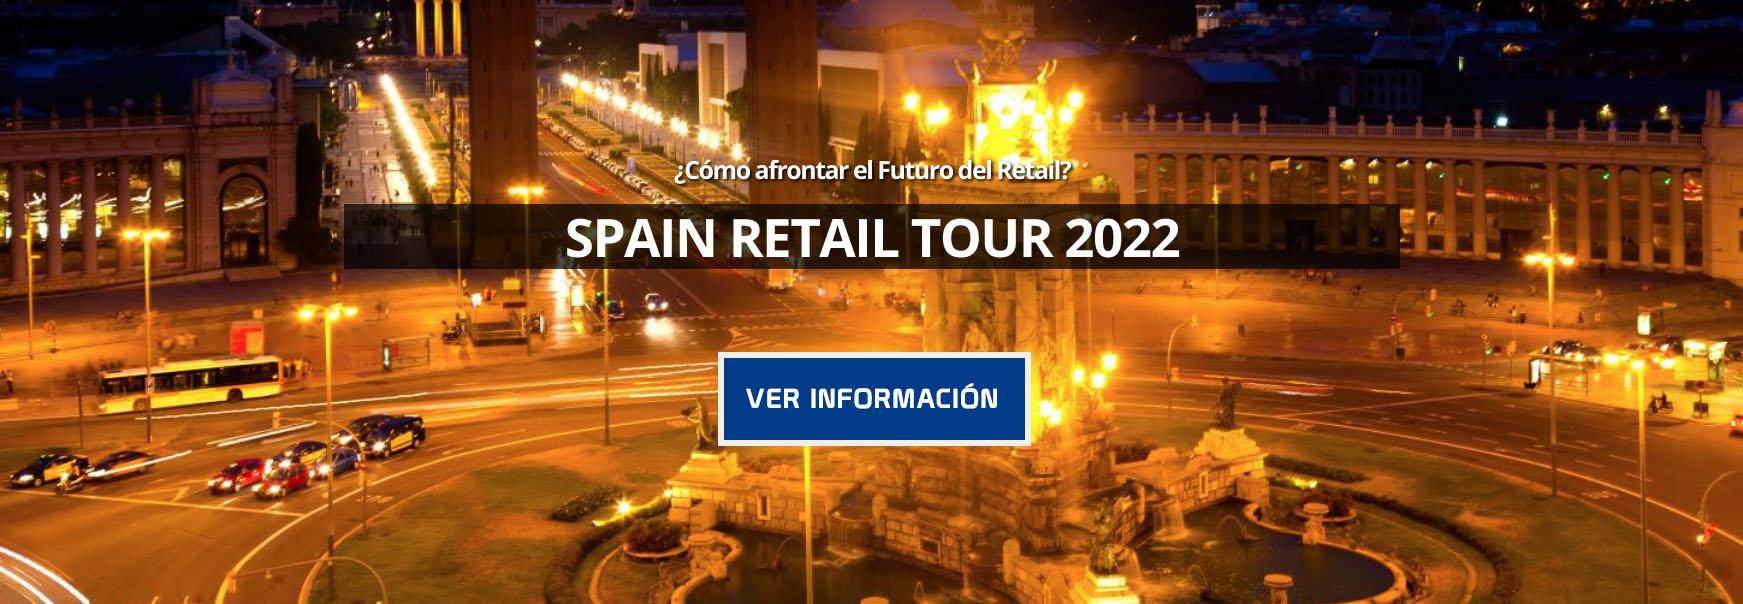 Spain Retail Tour 2022